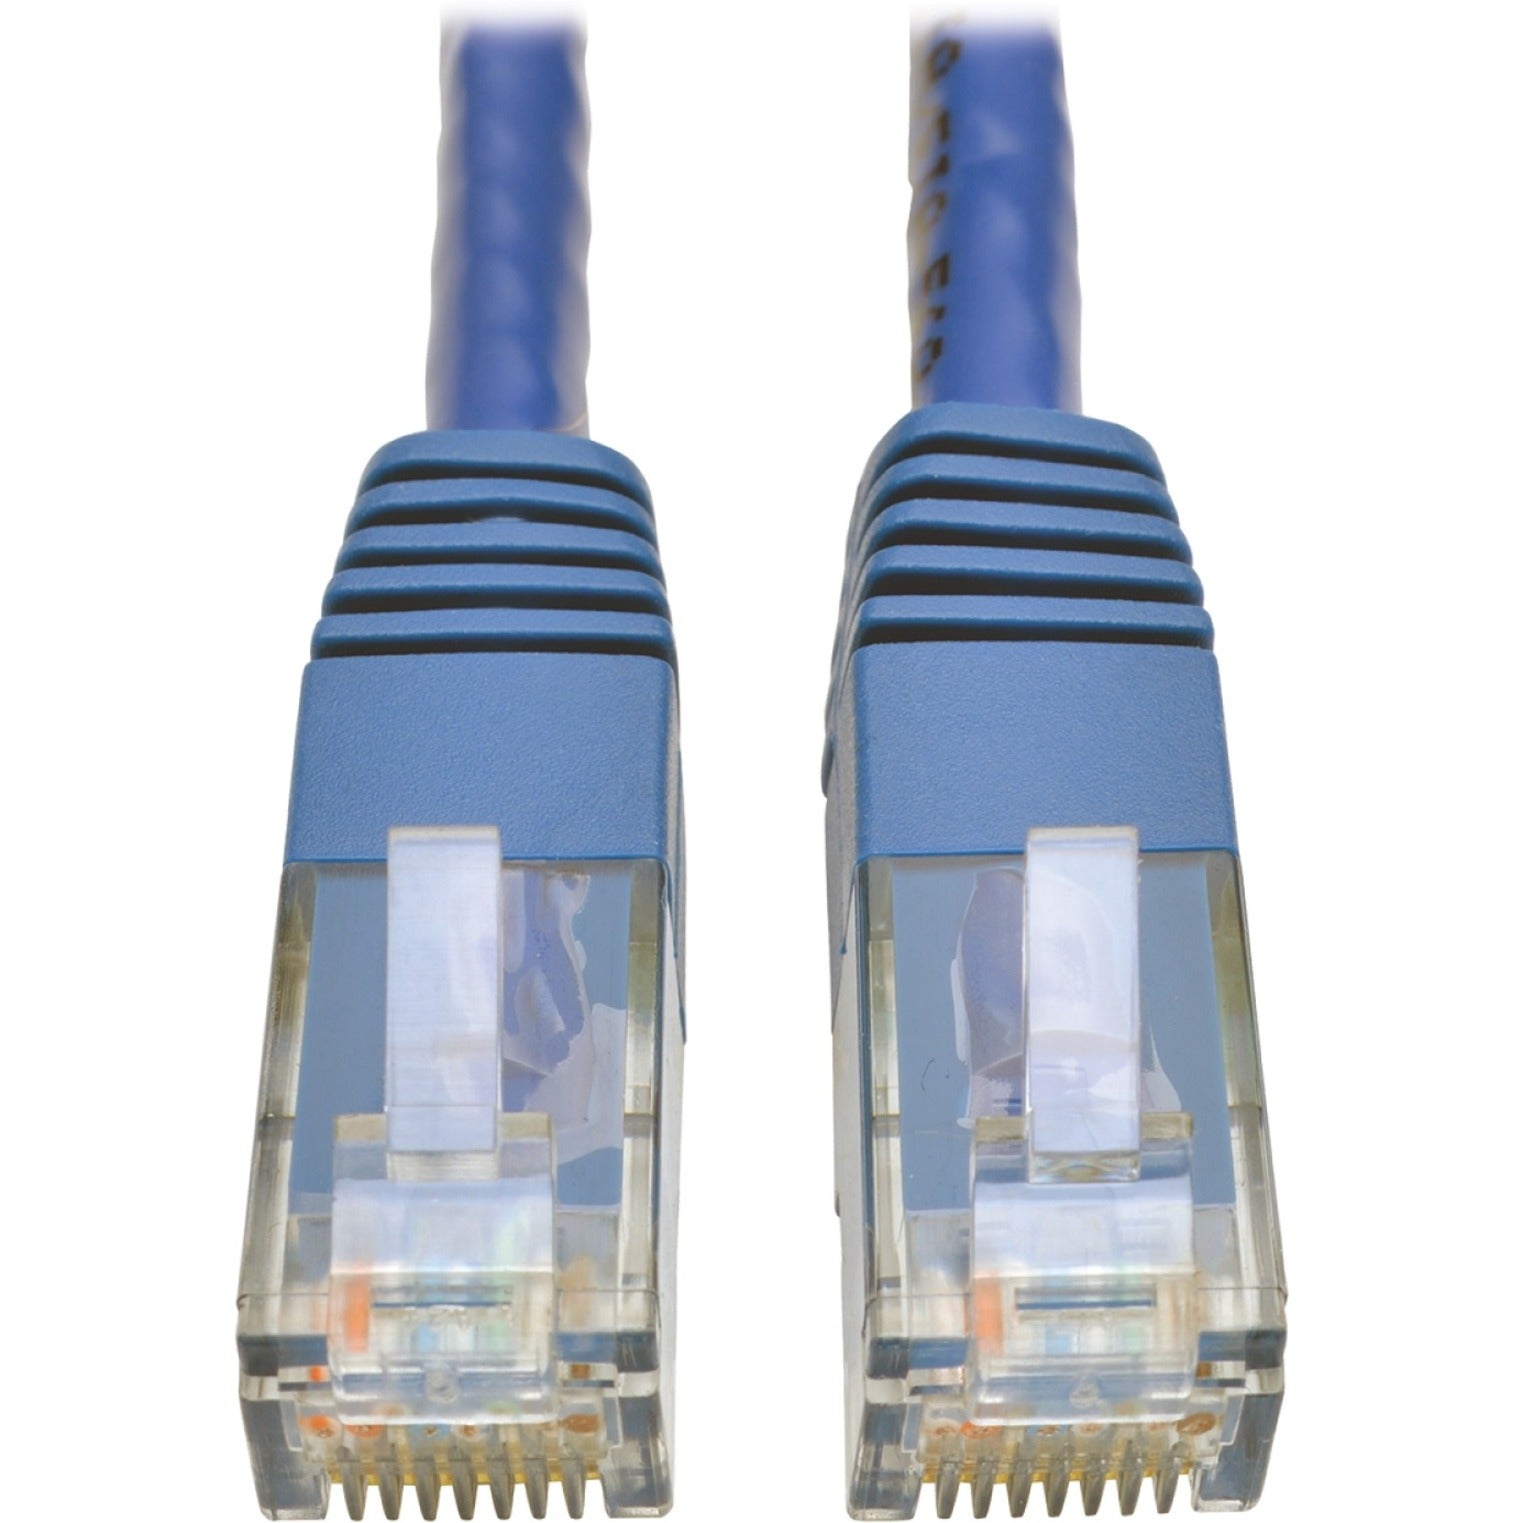 特利普·莱特 N200-002-BL 类6 千兆模压补丁电缆（RJ45 M/M），蓝色，2 英尺，耐裂，耐压，减压，1 Gbit/s 数据传输速率 特利普·莱特 蓝色